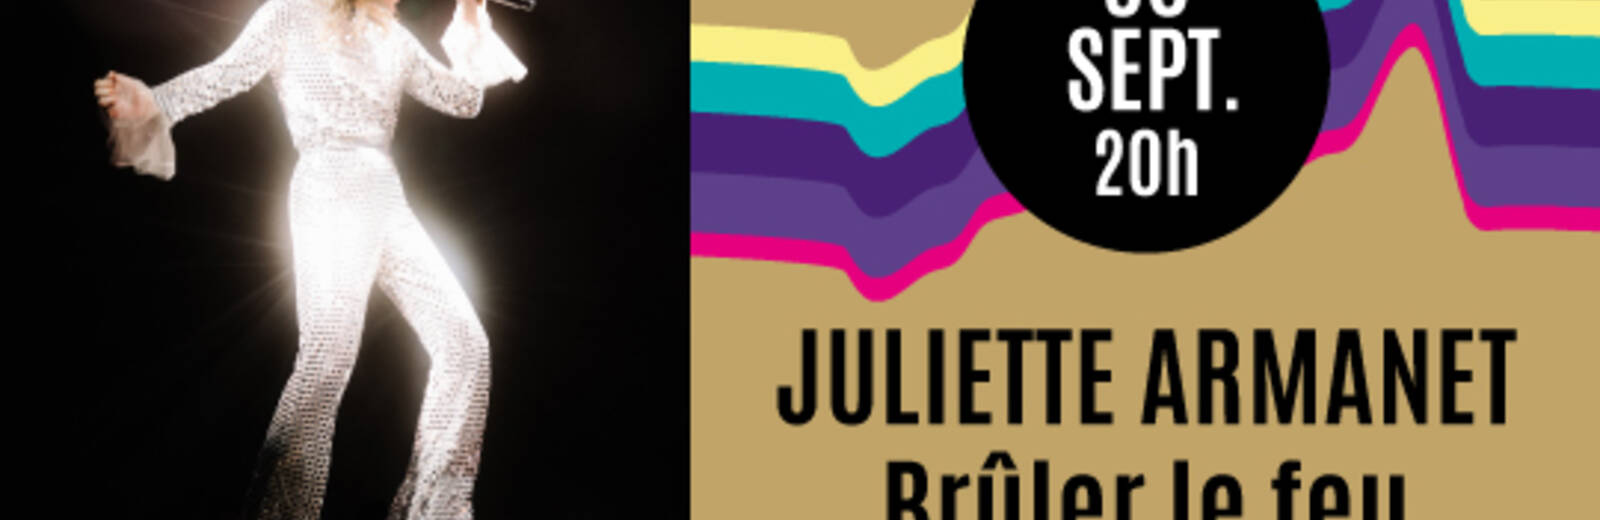 Juliette Armanet (complet)